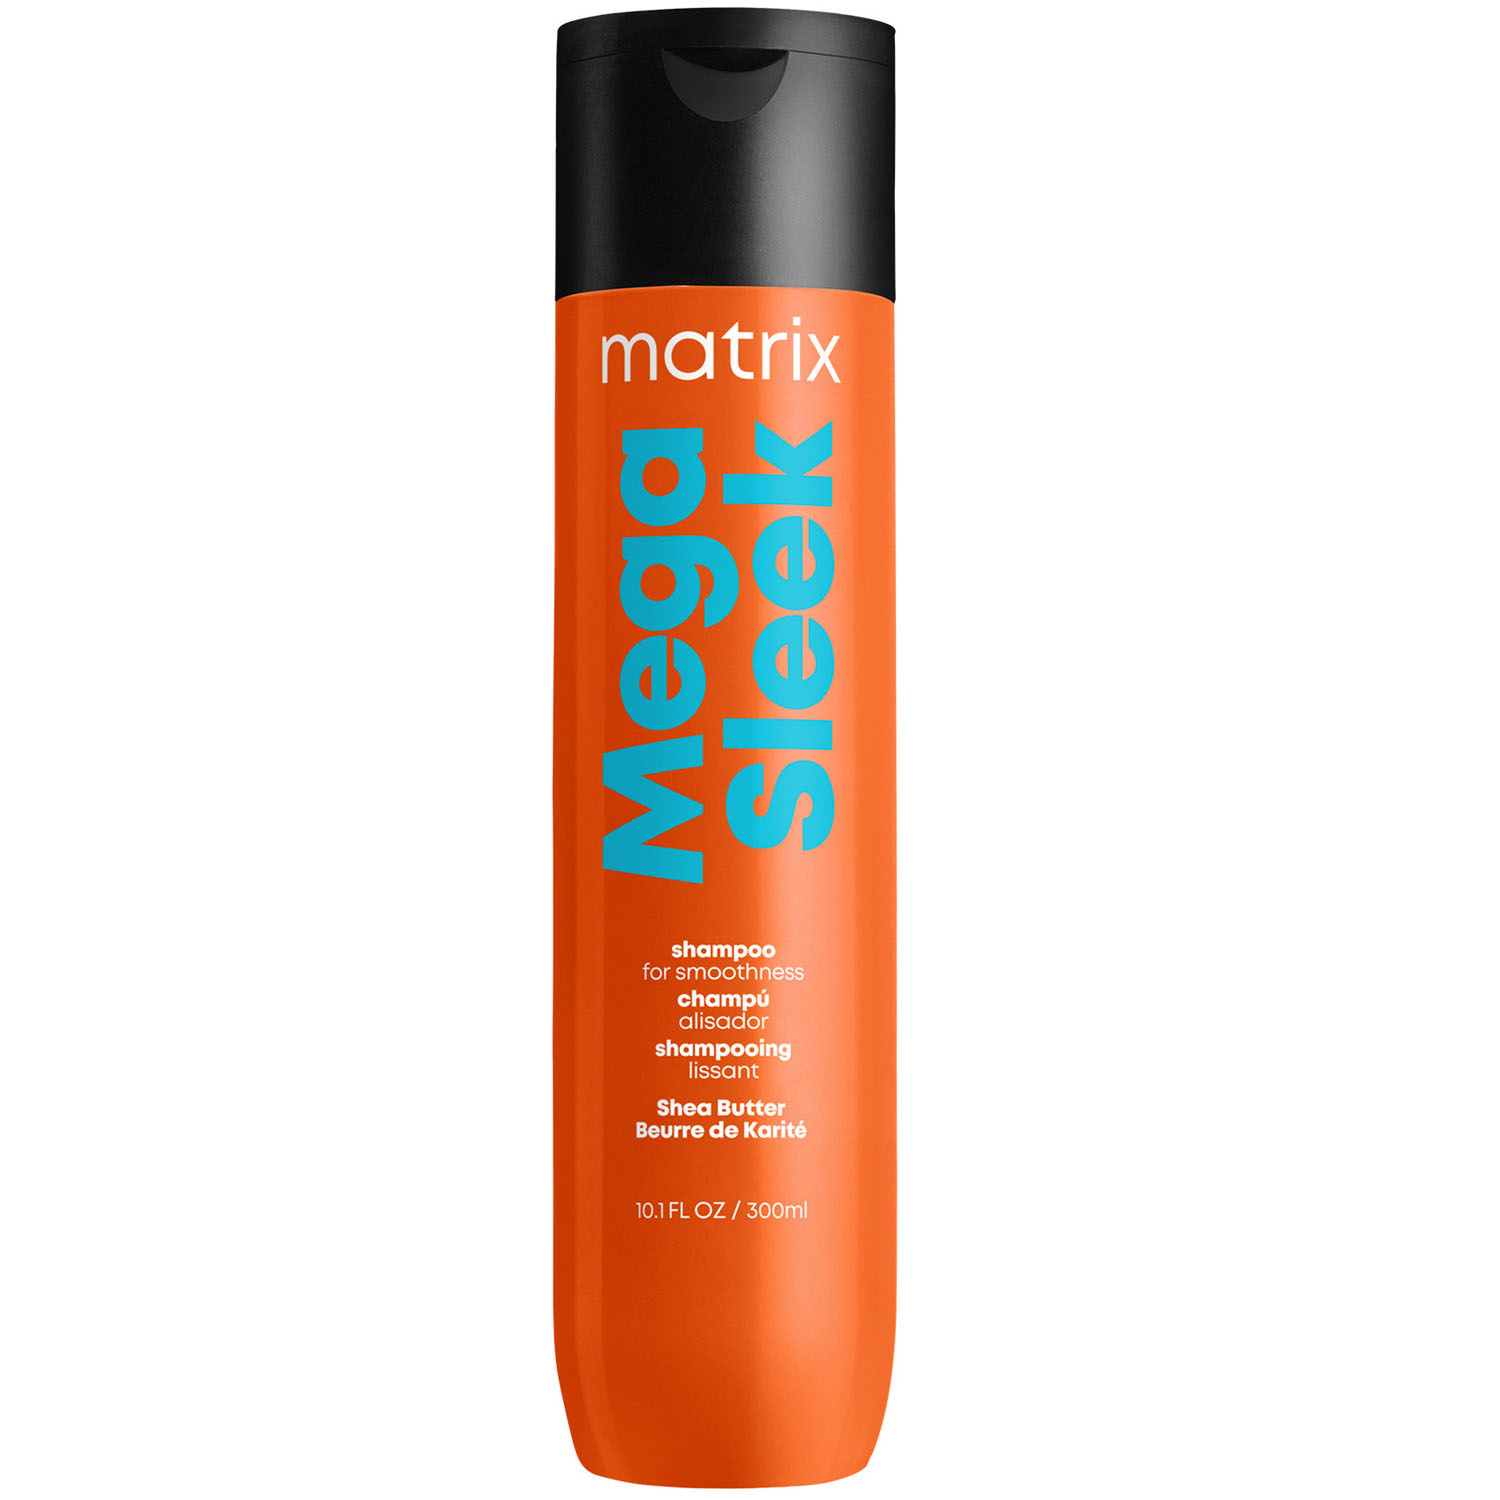 Matrix Шампунь Total results Mega Sleek для гладкости волос, 300 мл (Matrix, Total results) шампунь для непослушных волос с маслом ши total results mega sleek shea butter shampoo шампунь 1000мл